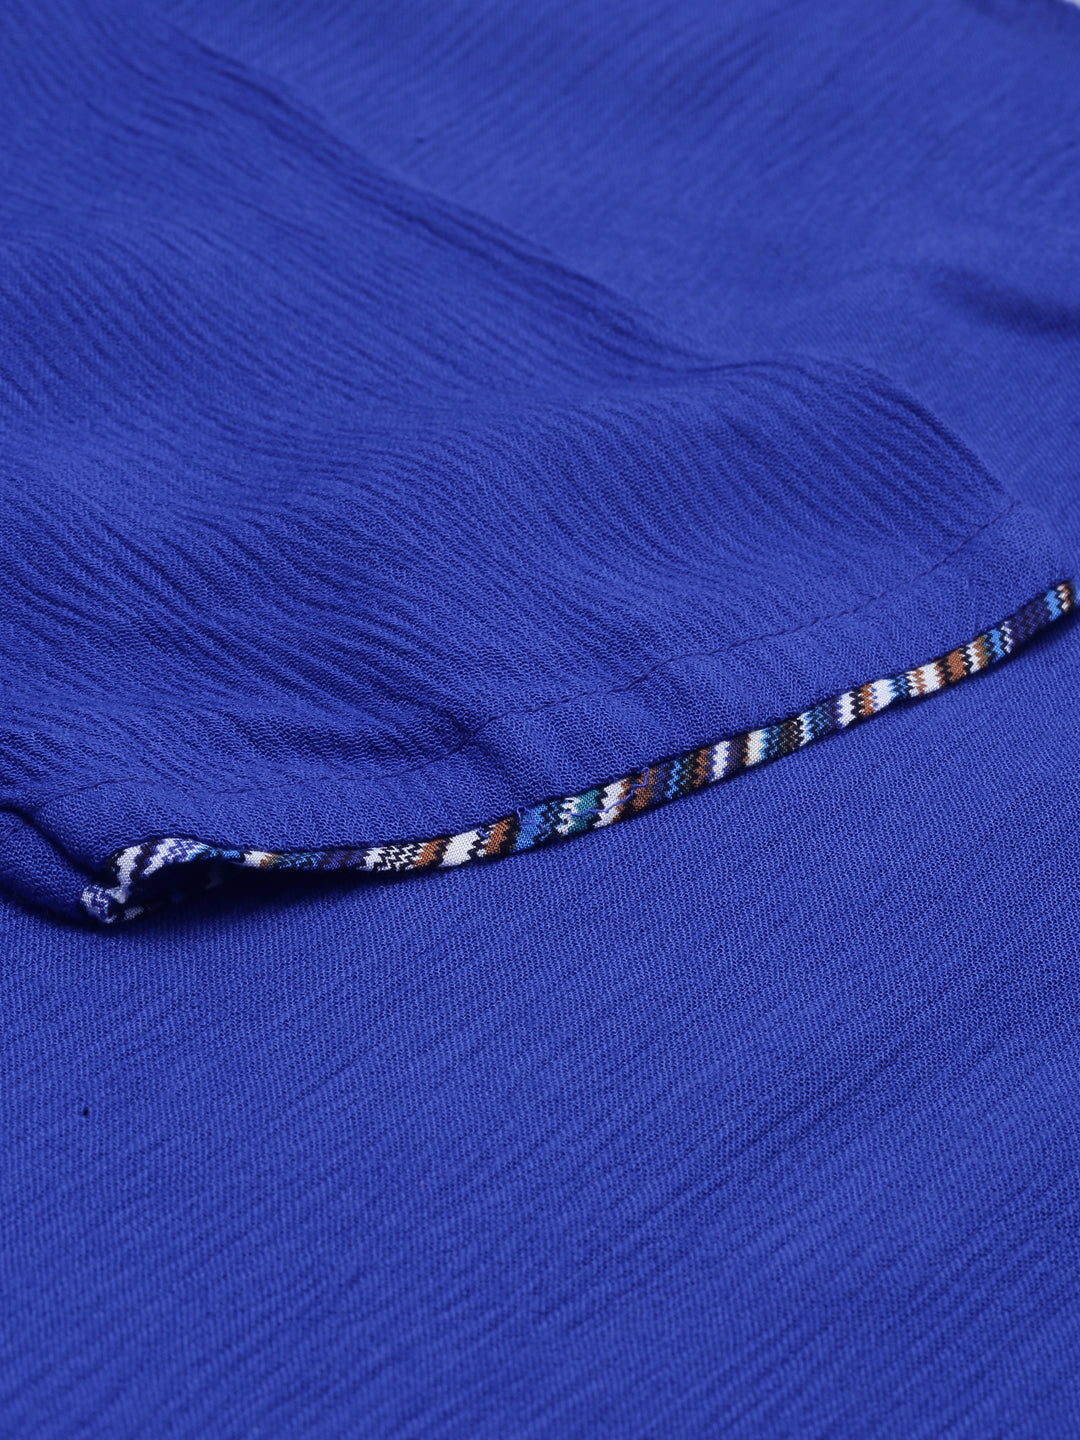 Neeru's Blue Color Chiffon Fabric Double Shirt